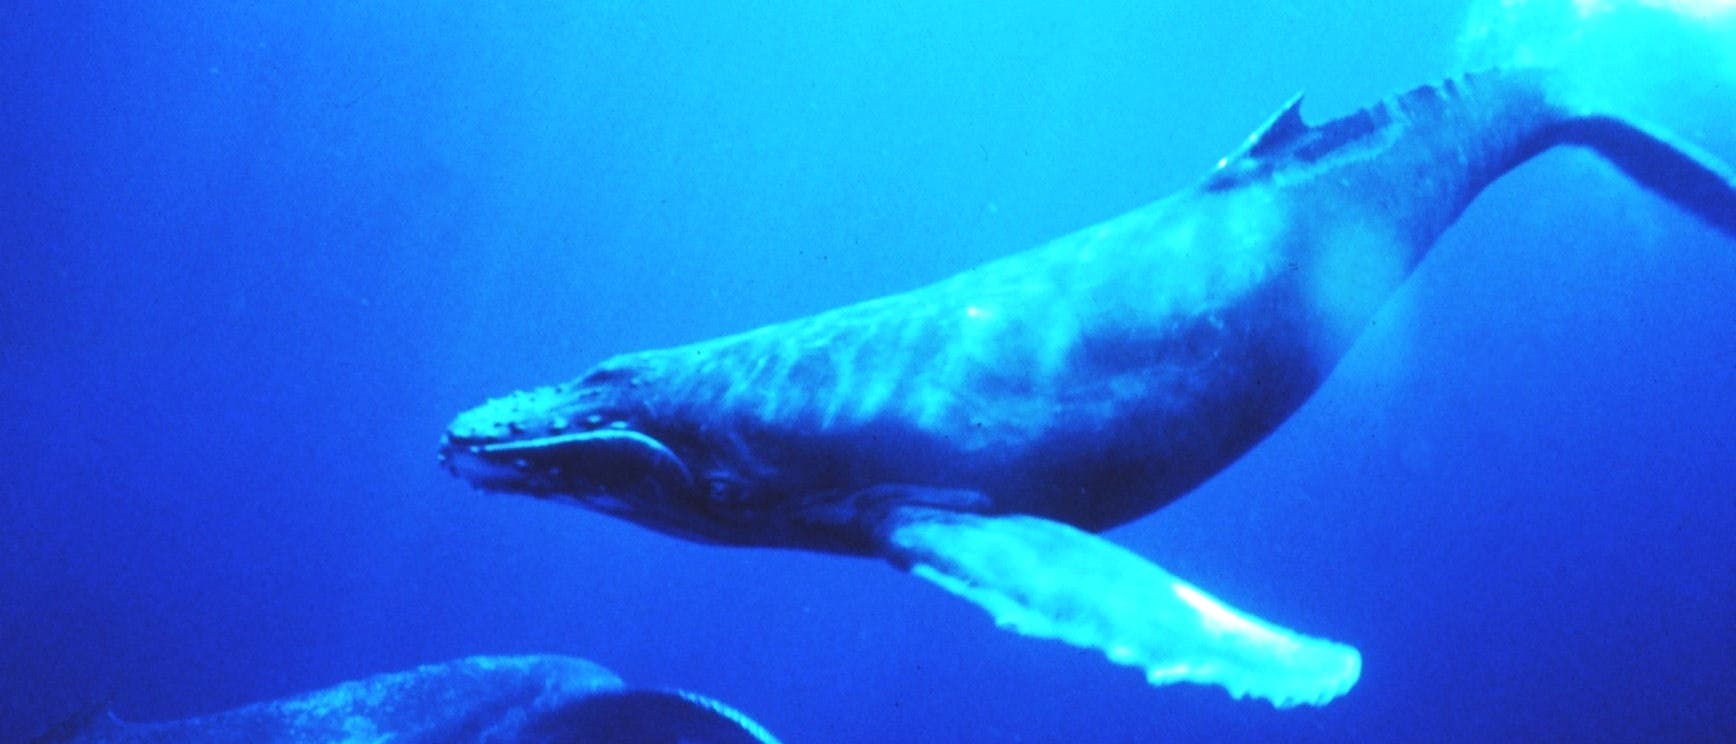 Wale werden durch laute Geräusche in ihrer Kommunikation und Orientierung beeinflusst.